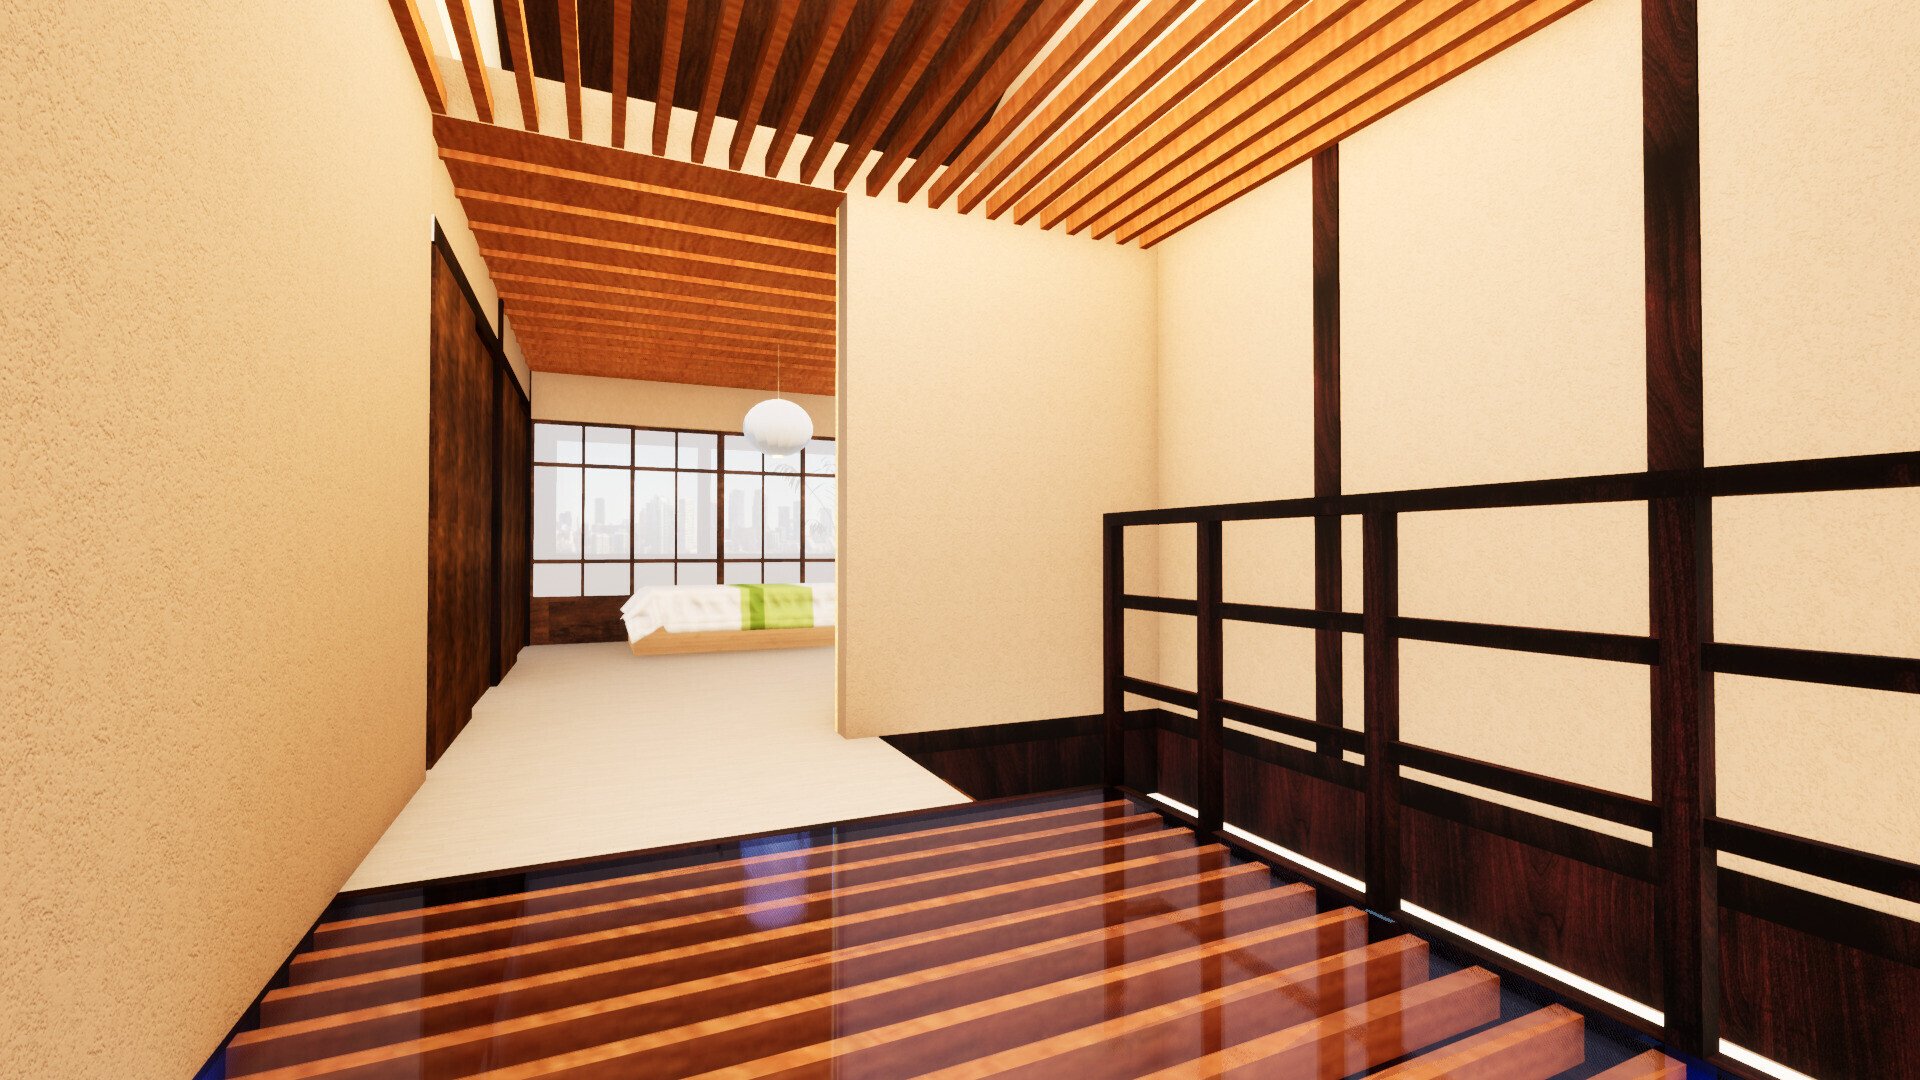 天窓から光が降り注ぐ2階のホール | 築100年京町家の快適リノベーション